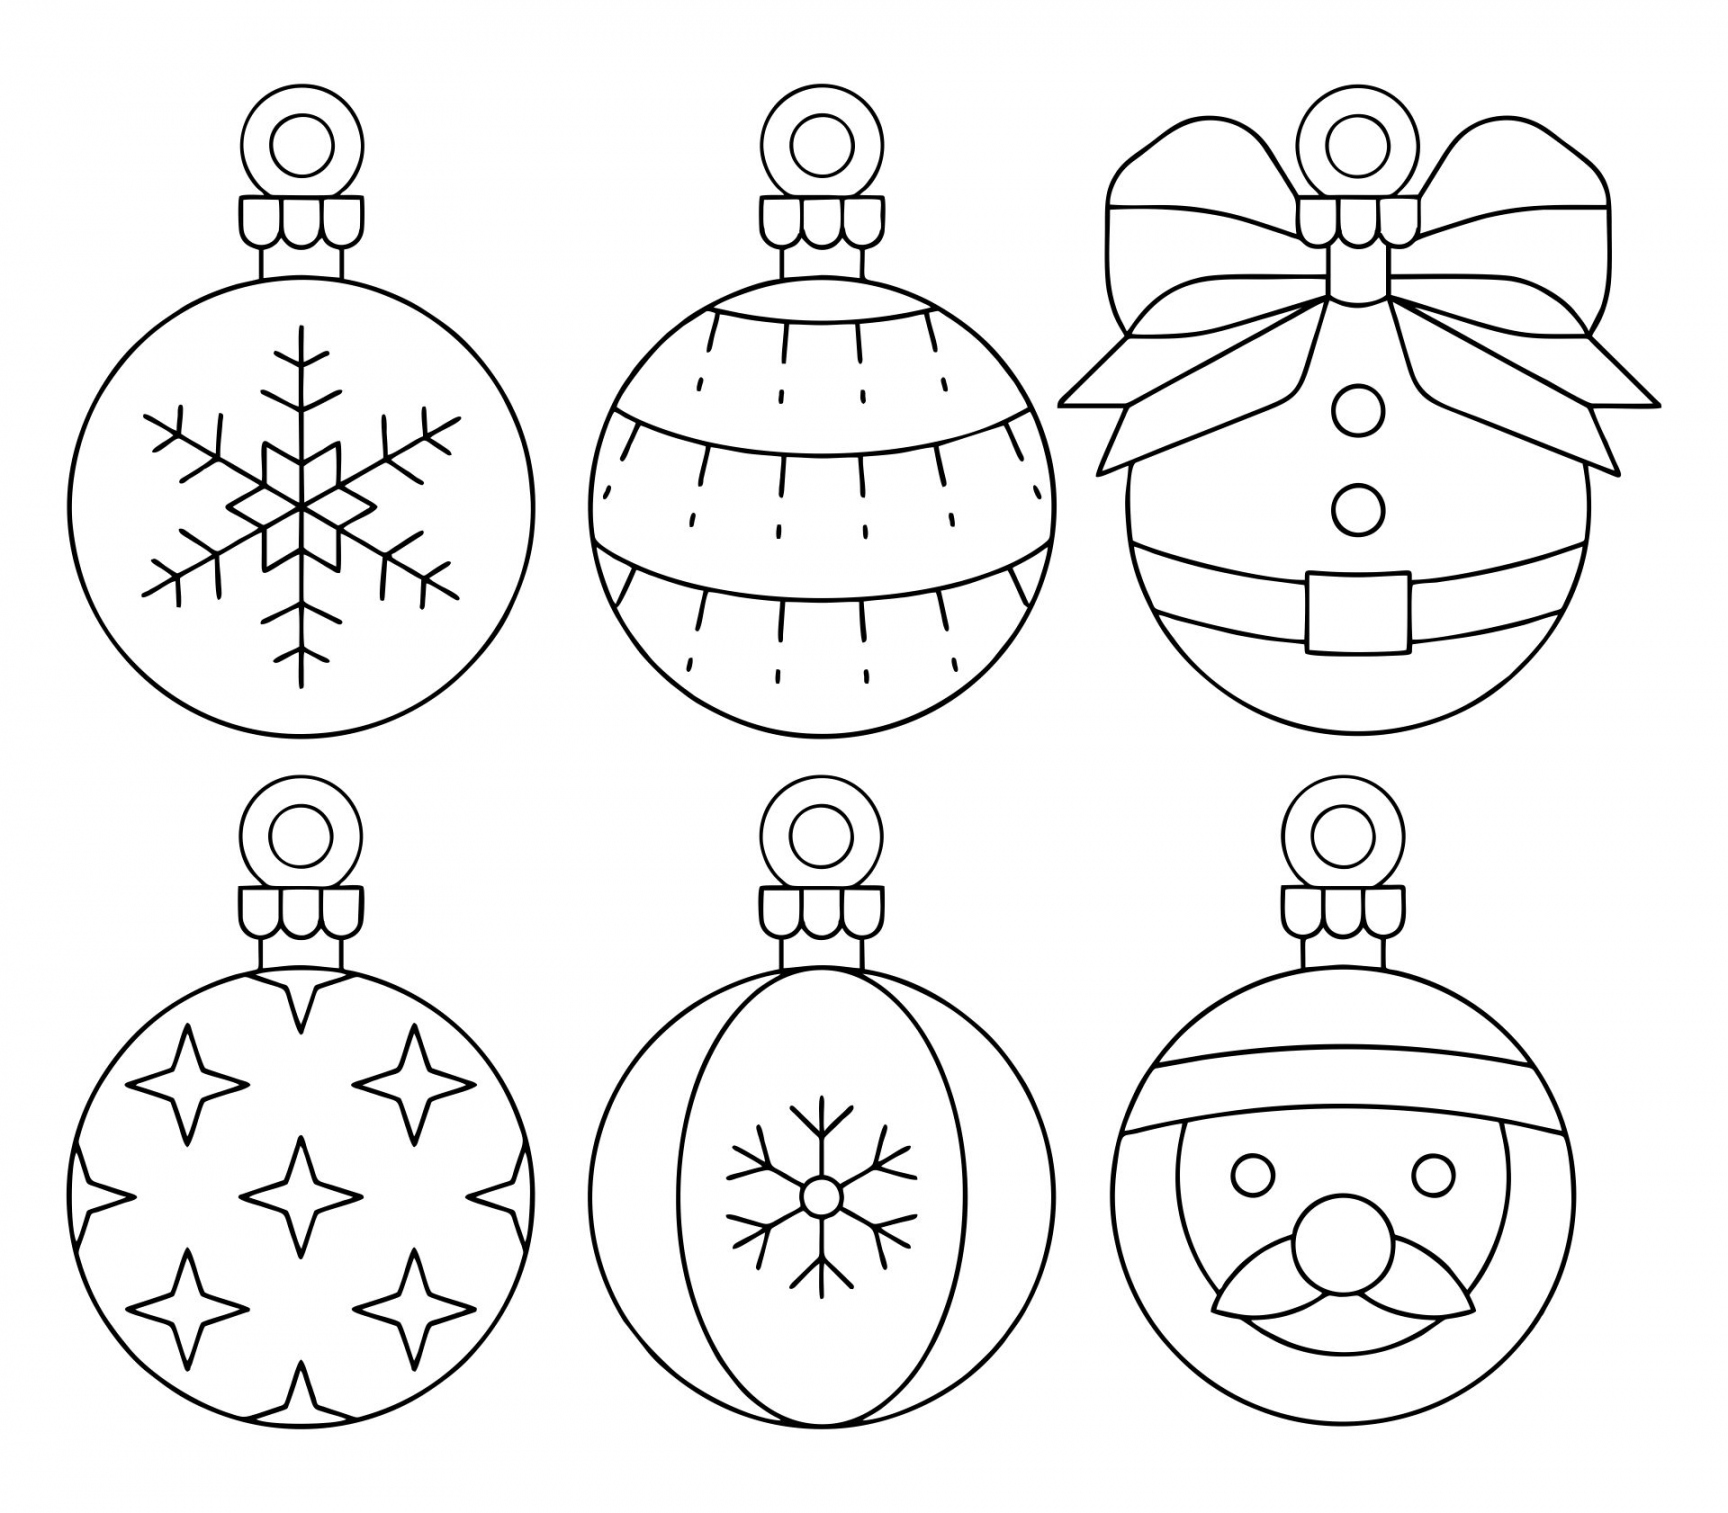 Christmas Tree Ornaments Templates Printable  Christmas ornament  - FREE Printables - Ornament Template